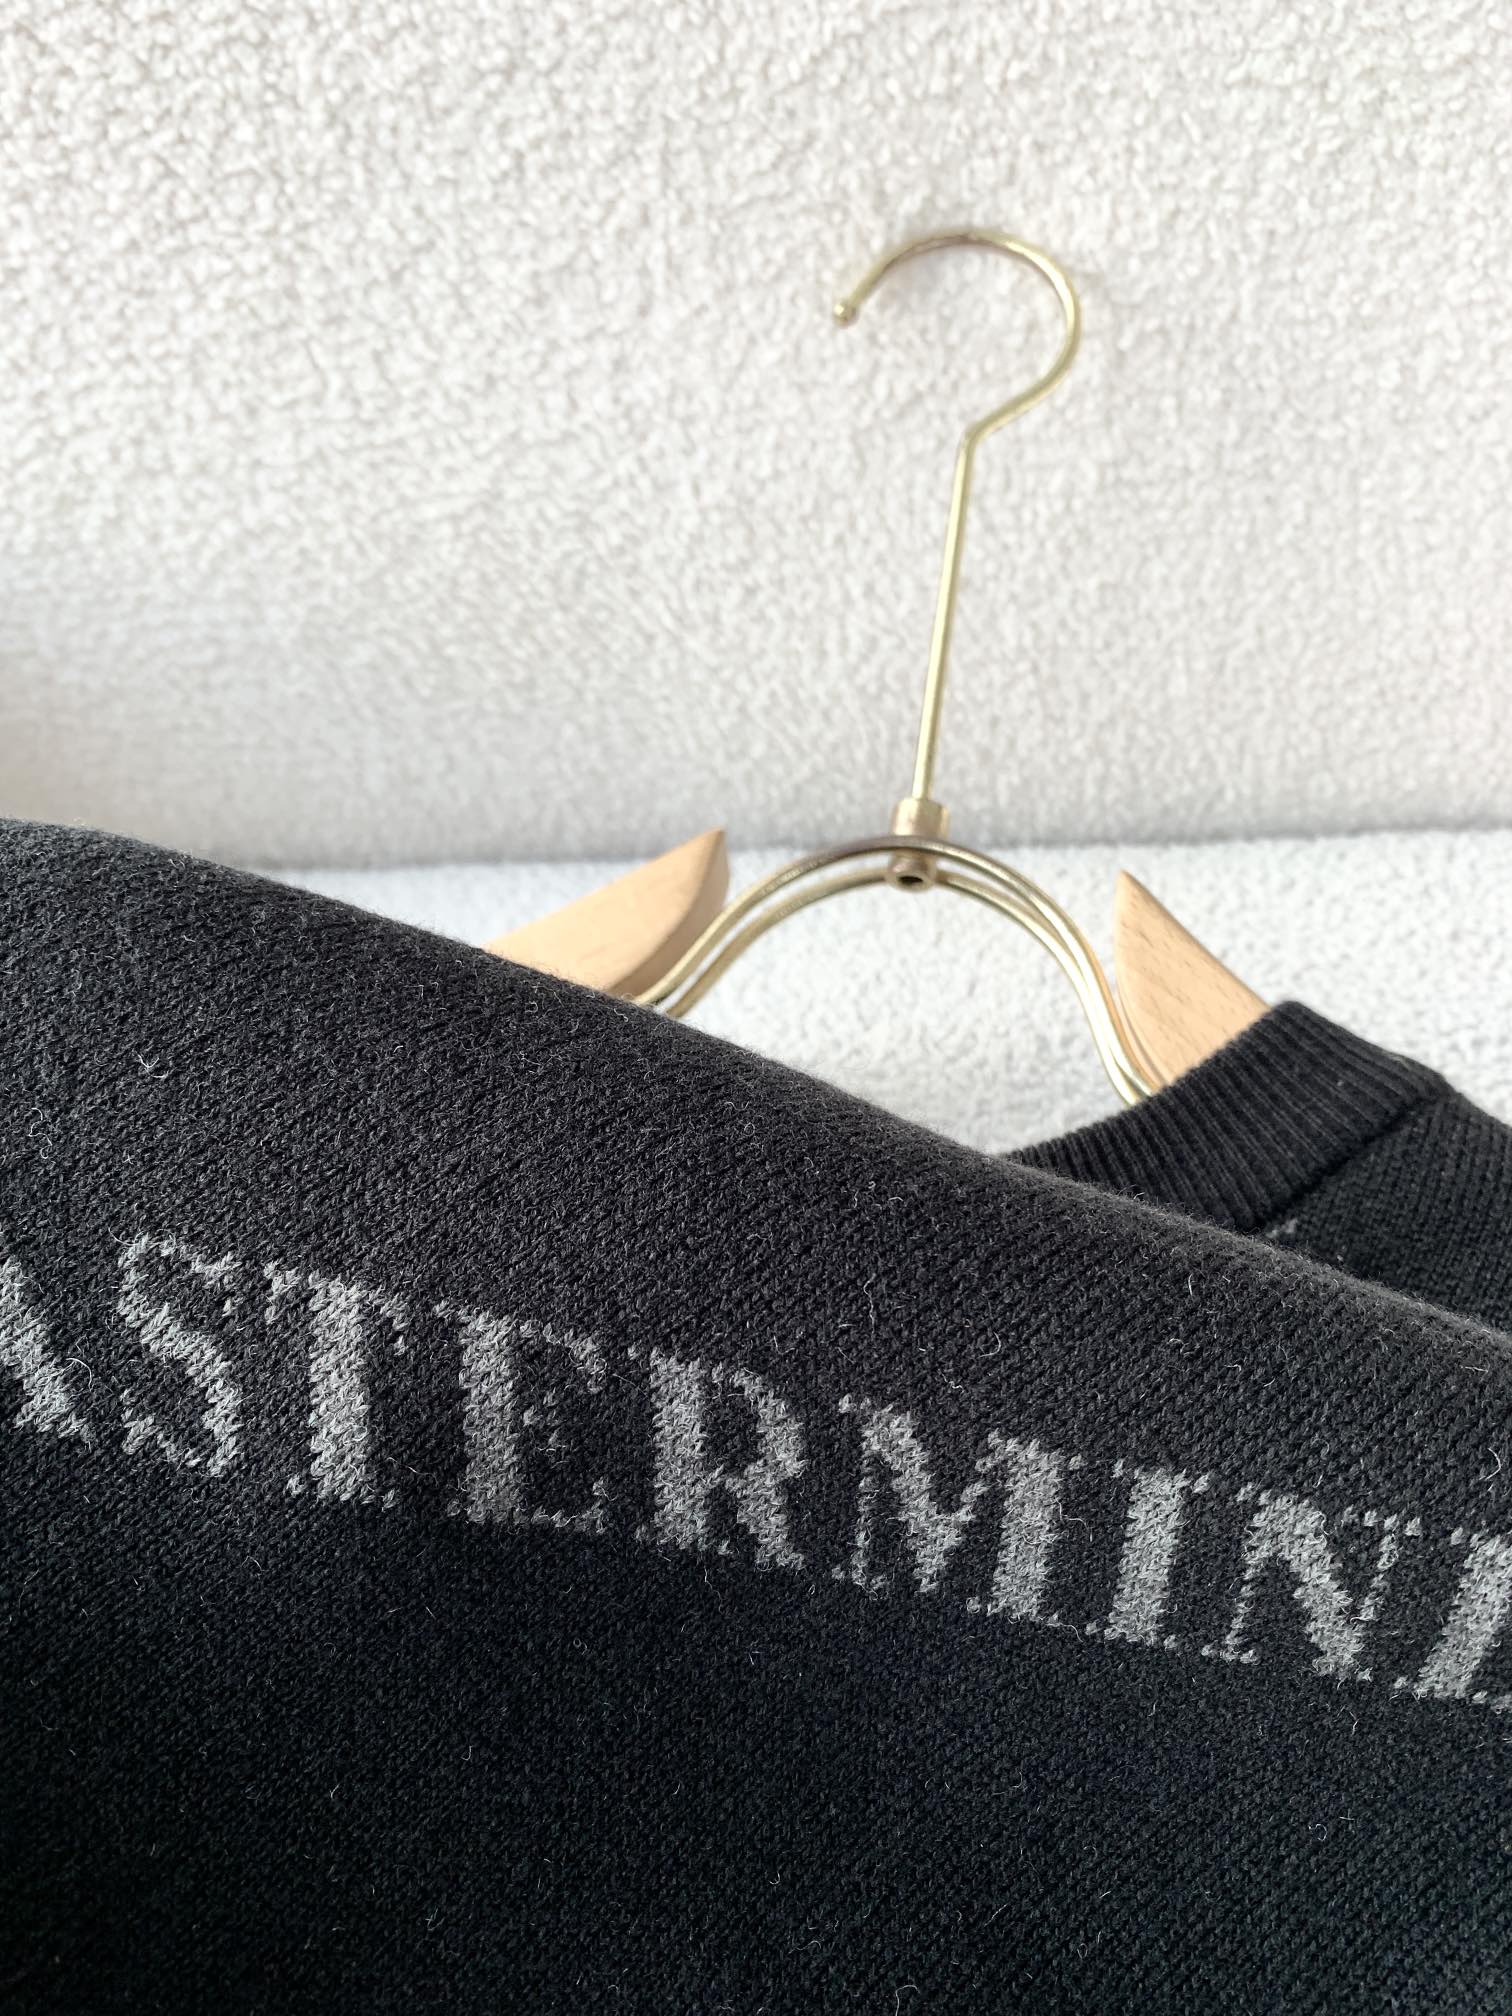 MASTERMIND ホスピタリティマインド とはコピー ウール セーター トップス 柔らかい ニット 髑髏ロゴ ブラック_8